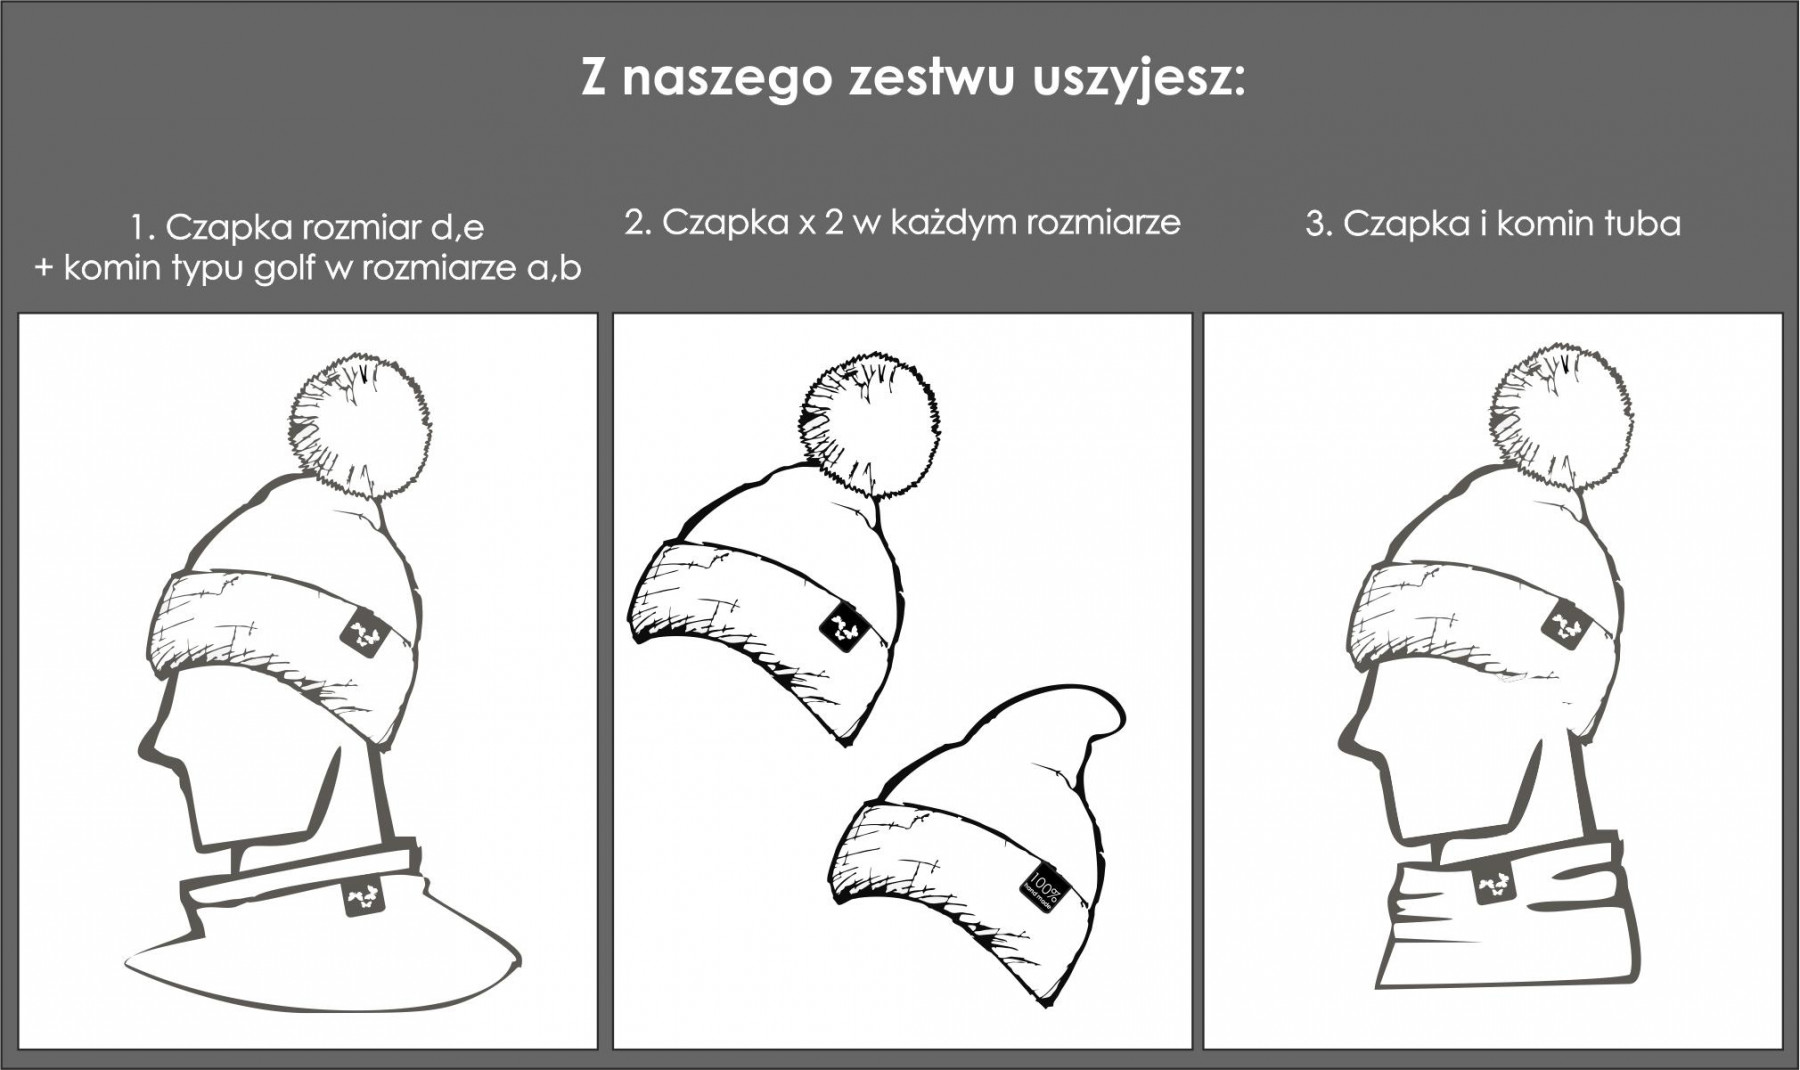 JEANS / lis - Zestaw kreatywny do uszycia czapki i komina